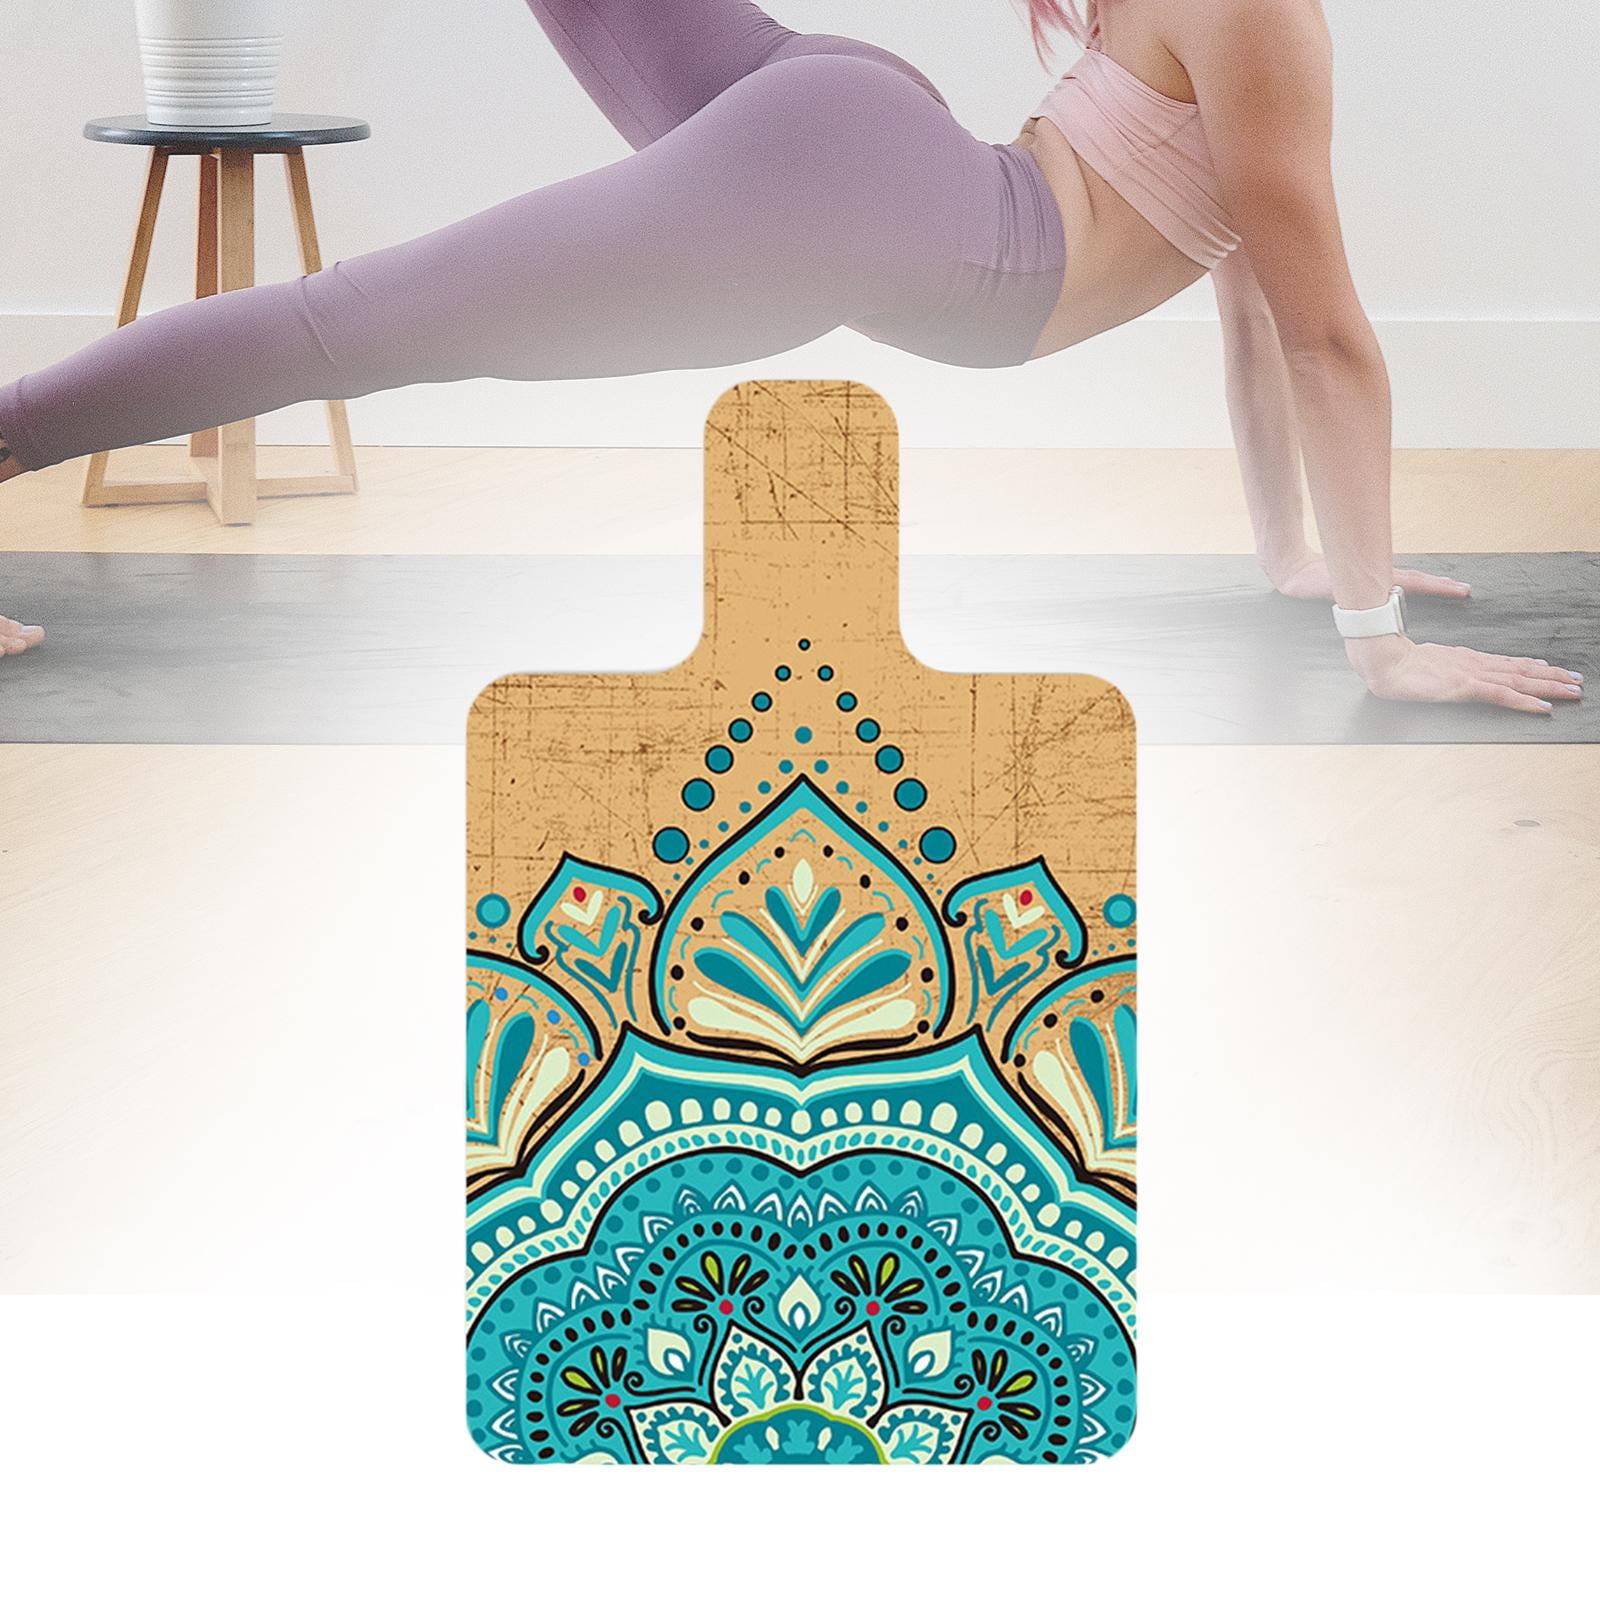 Купить Коврик для йоги GAIAM FOLDABLE YOGA MAT 173см*61см*2мм, США